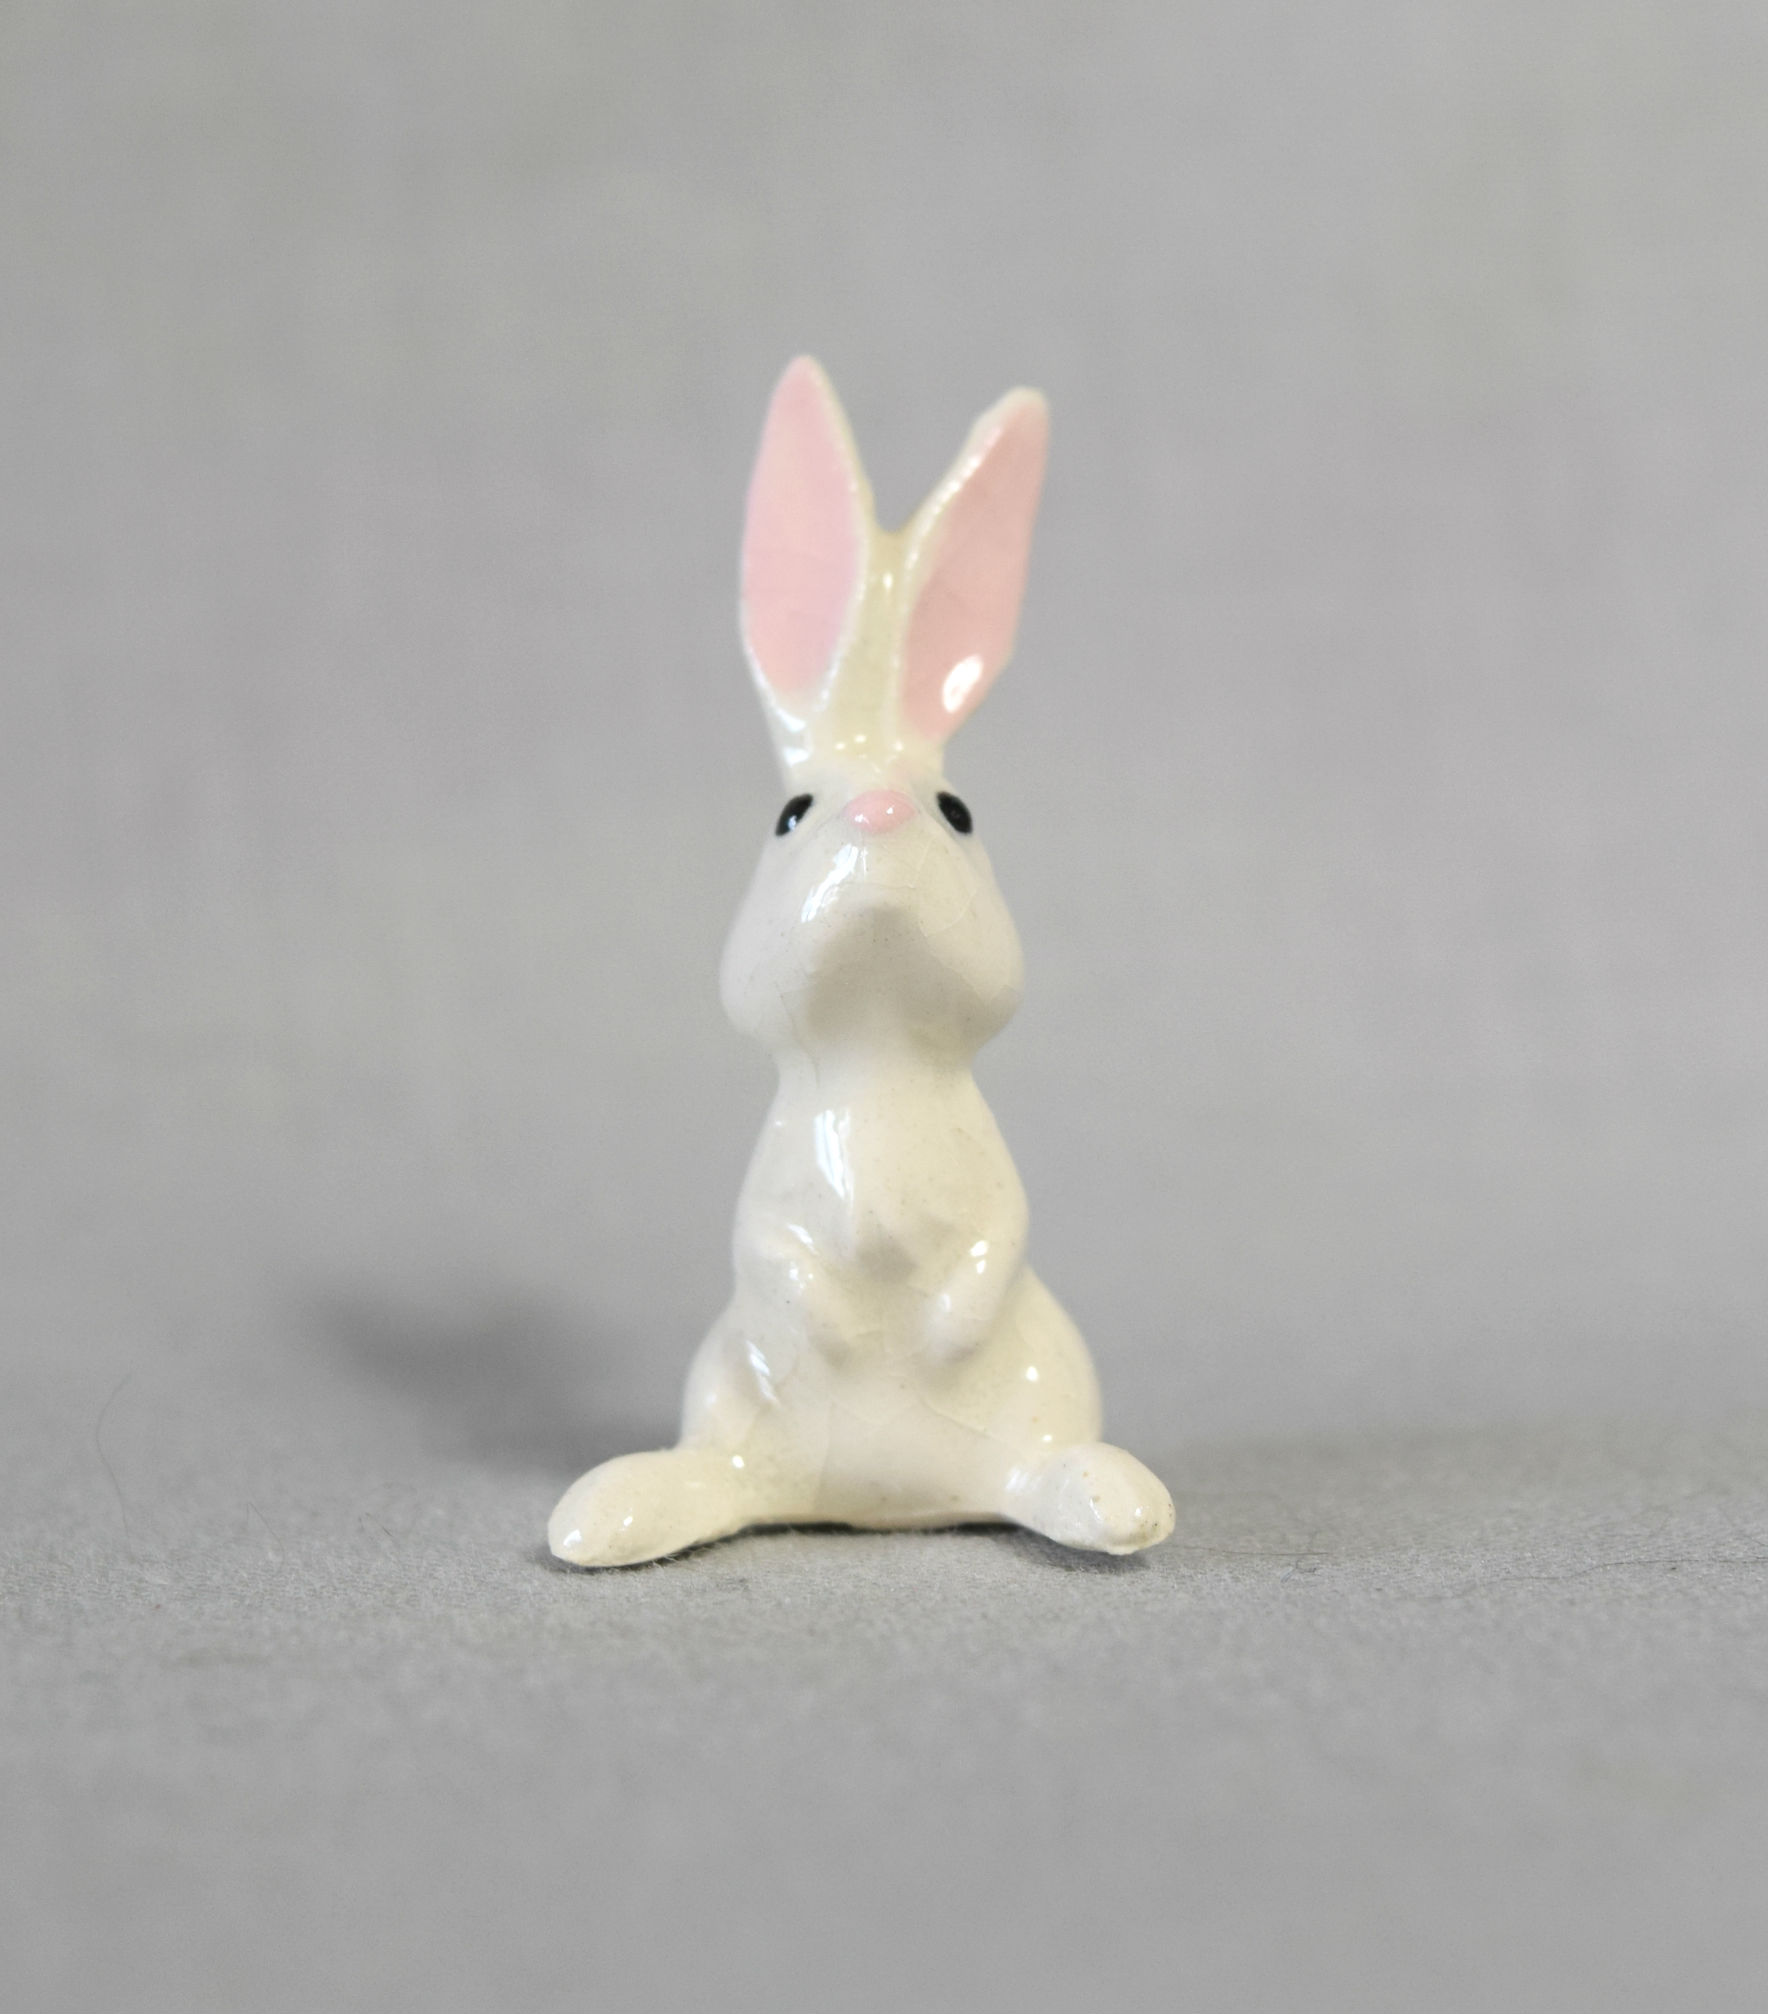 Rabbit, non-Disney-image